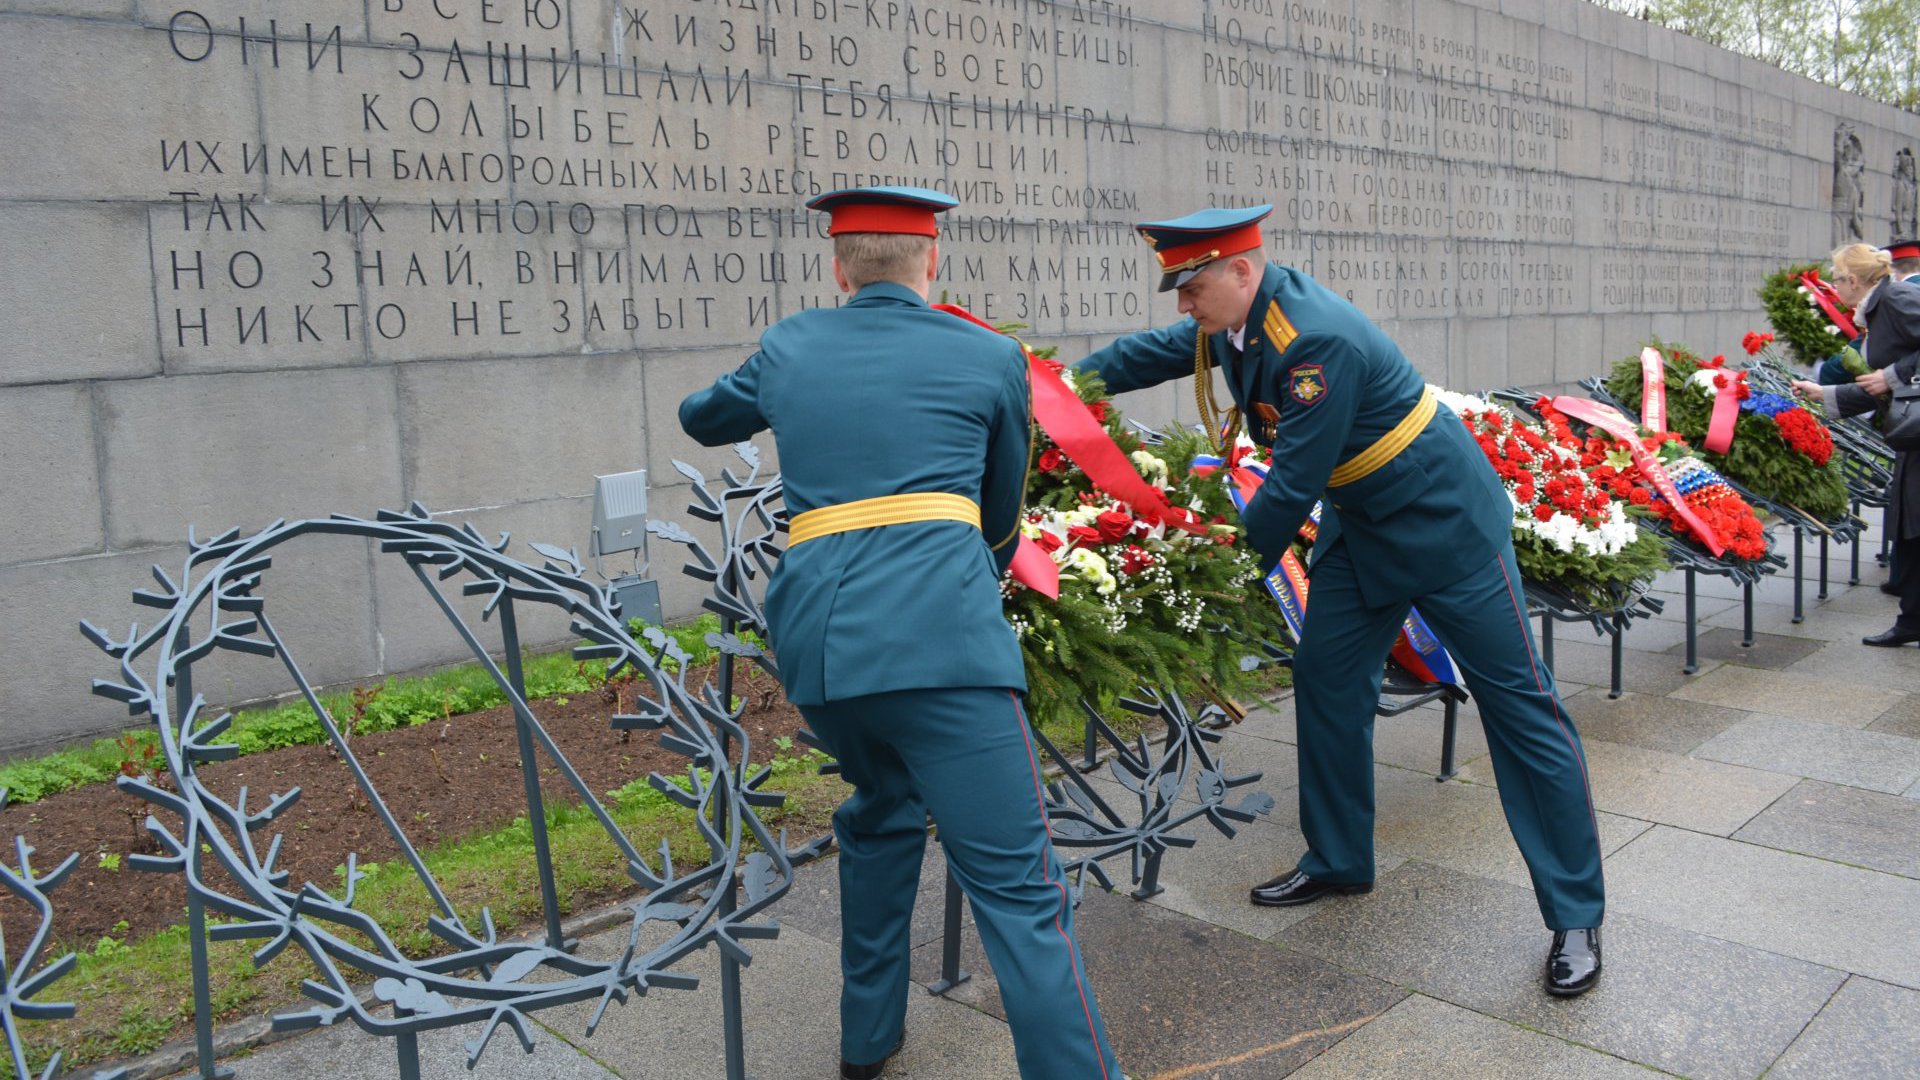 Контрольно-счетная палата Санкт-Петербурга приняла участие в торжественно-траурной церемонии, посвященной 70-летию Победы в Великой Отечественной войне